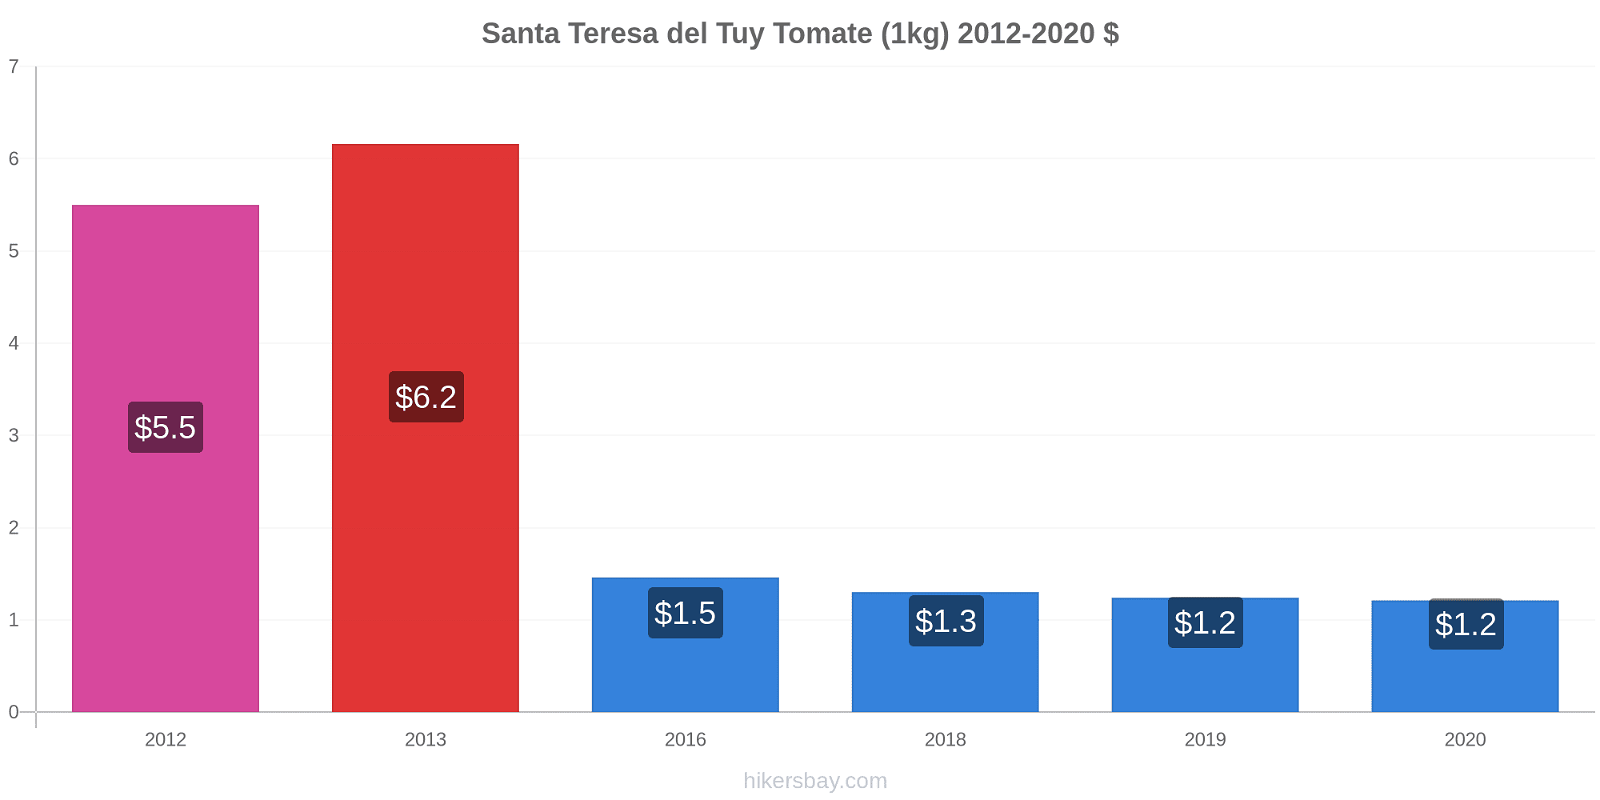 Santa Teresa del Tuy changements de prix Tomate (1kg) hikersbay.com